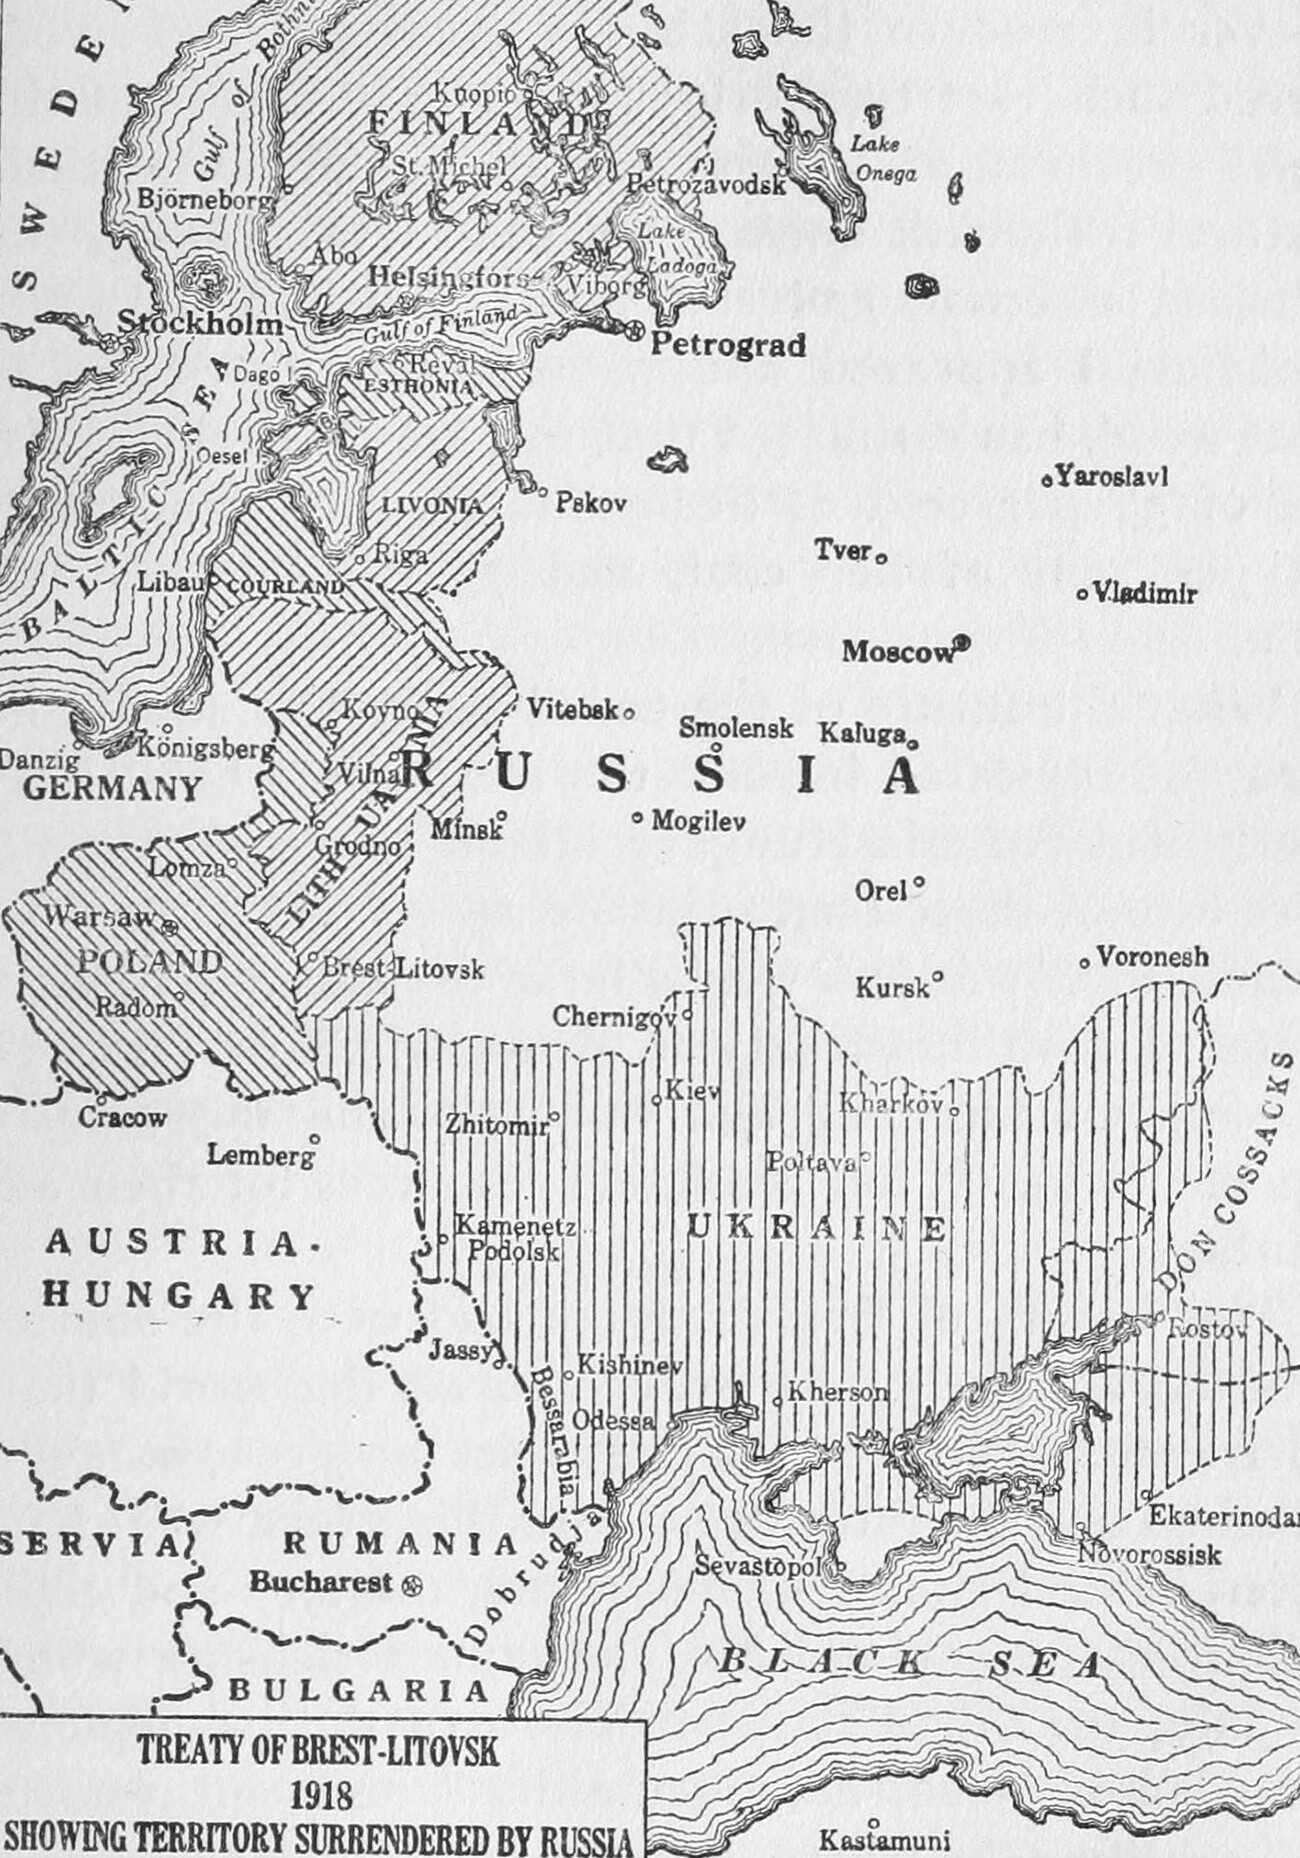 Treaty of Brest-Litovsk.